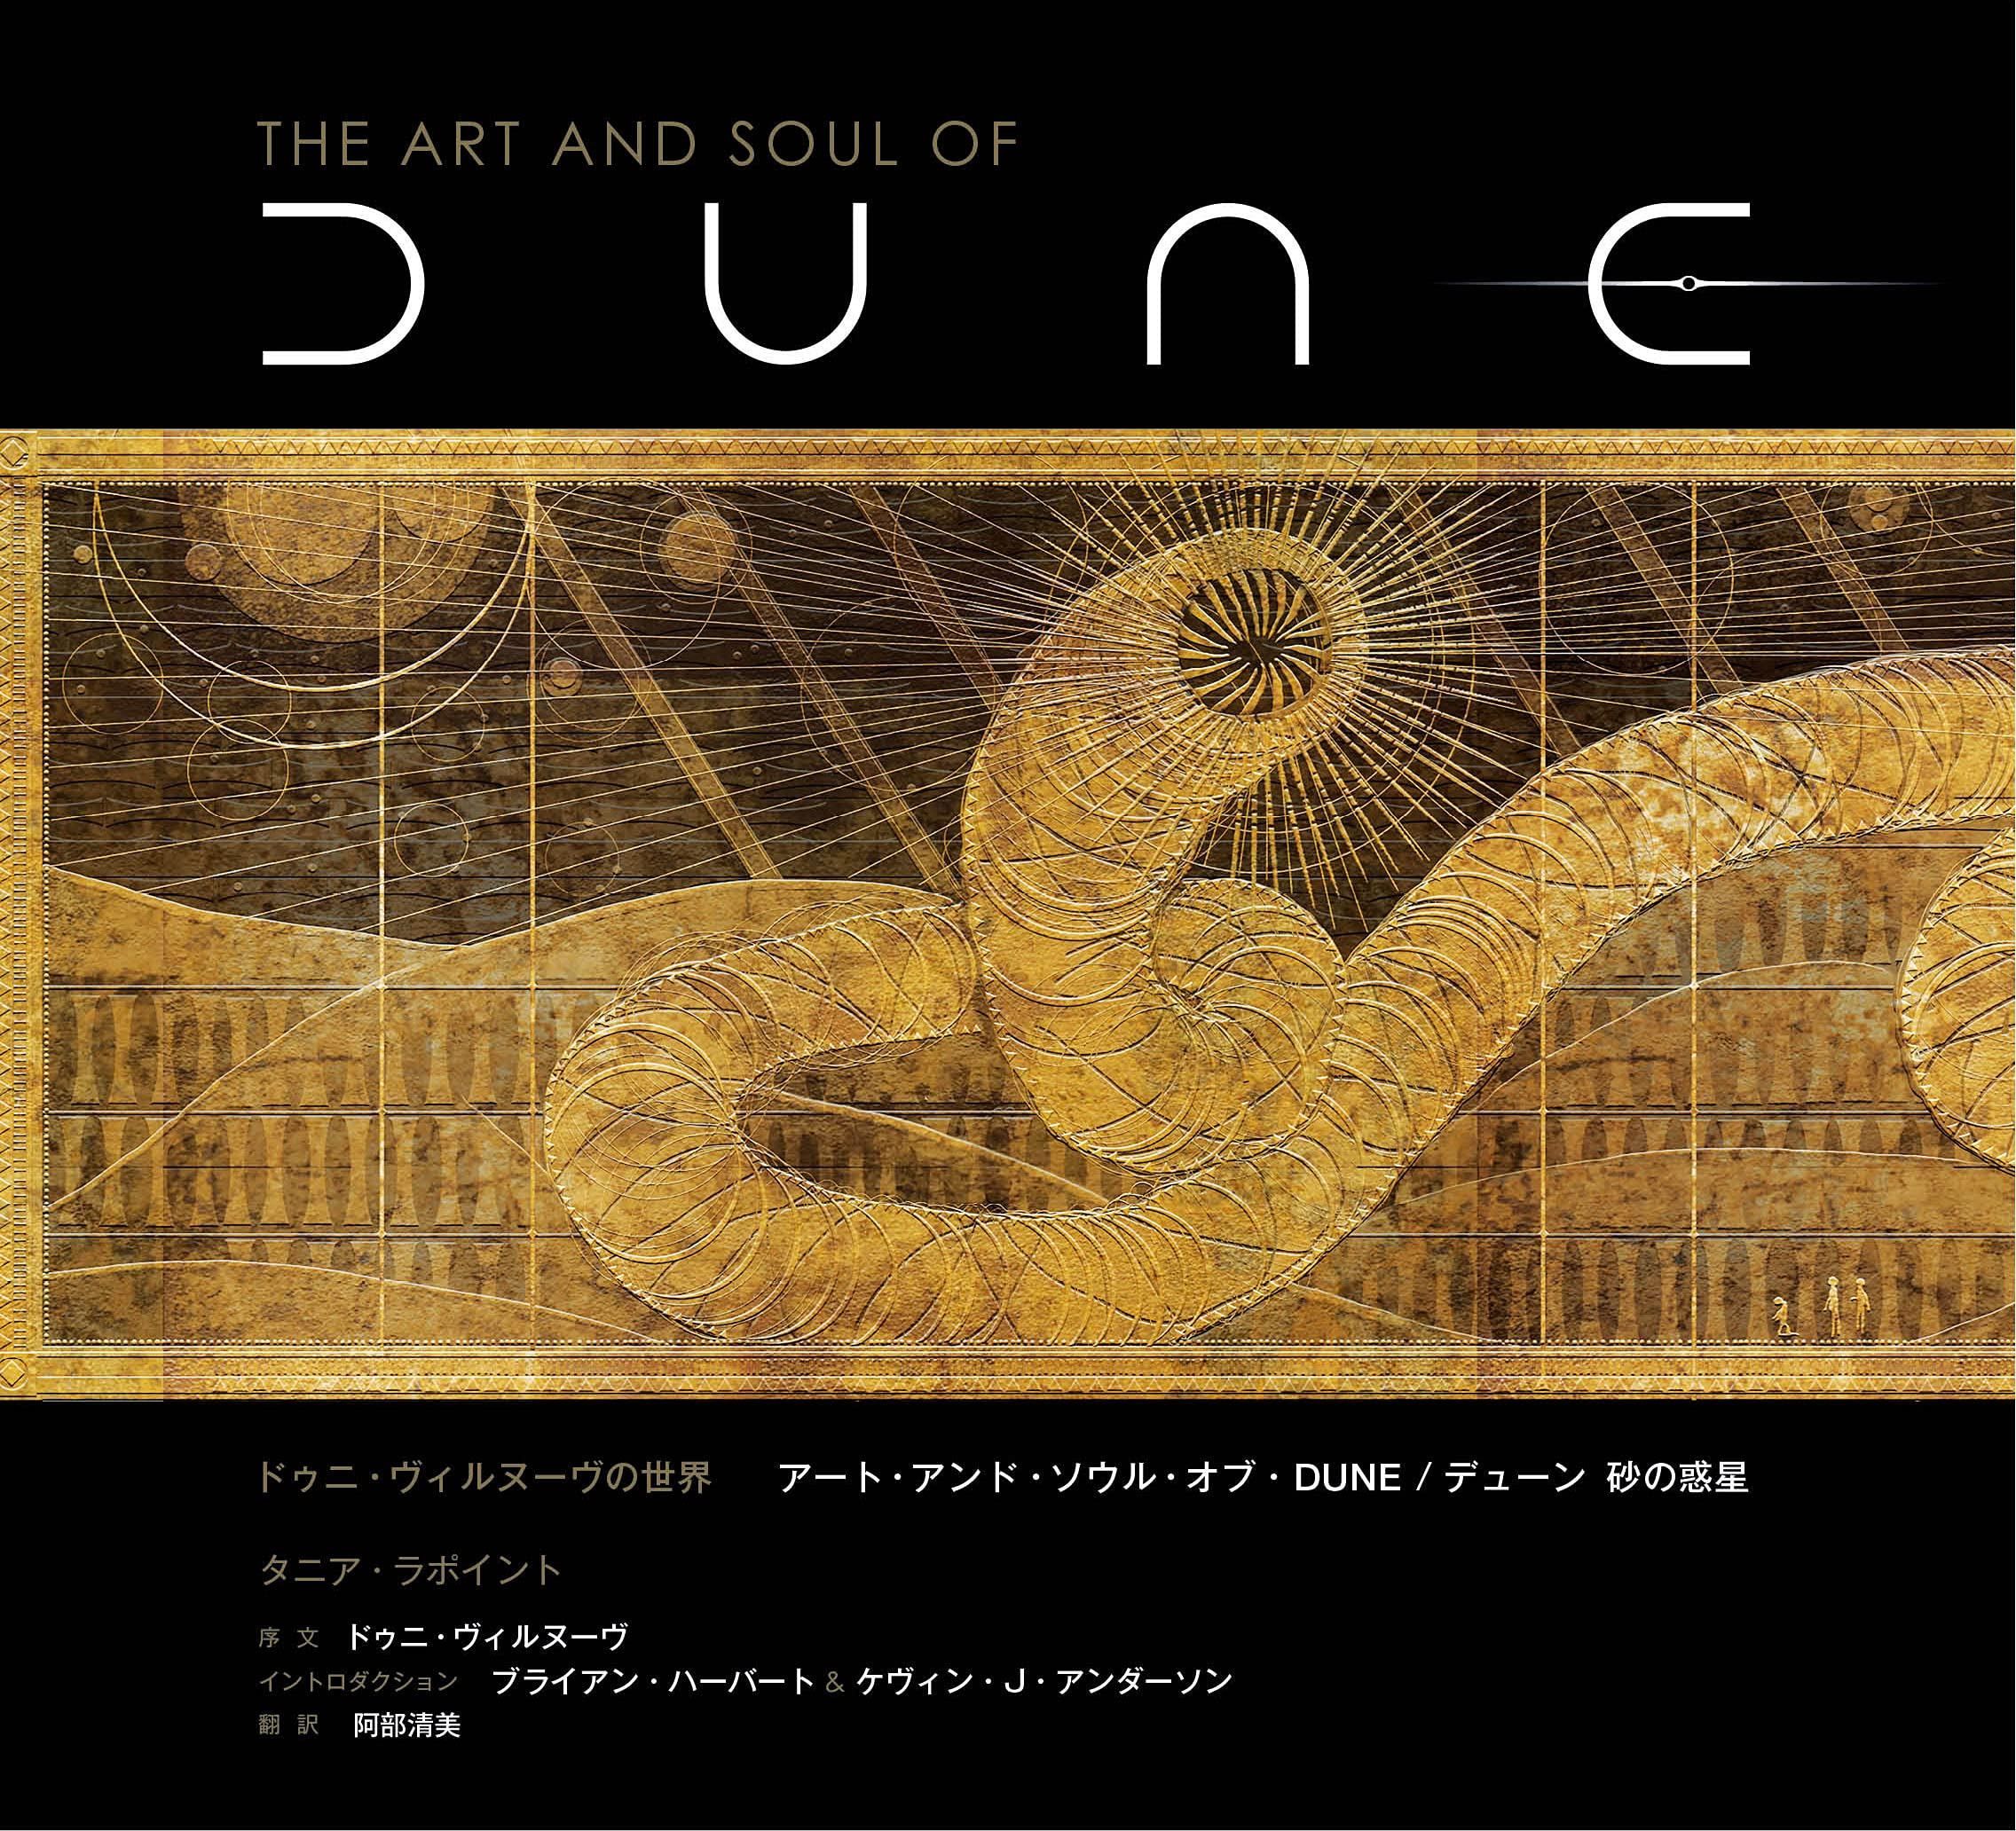 Denis Villeneuve's World Art And Soul Of Dune / Dune Sand Planet